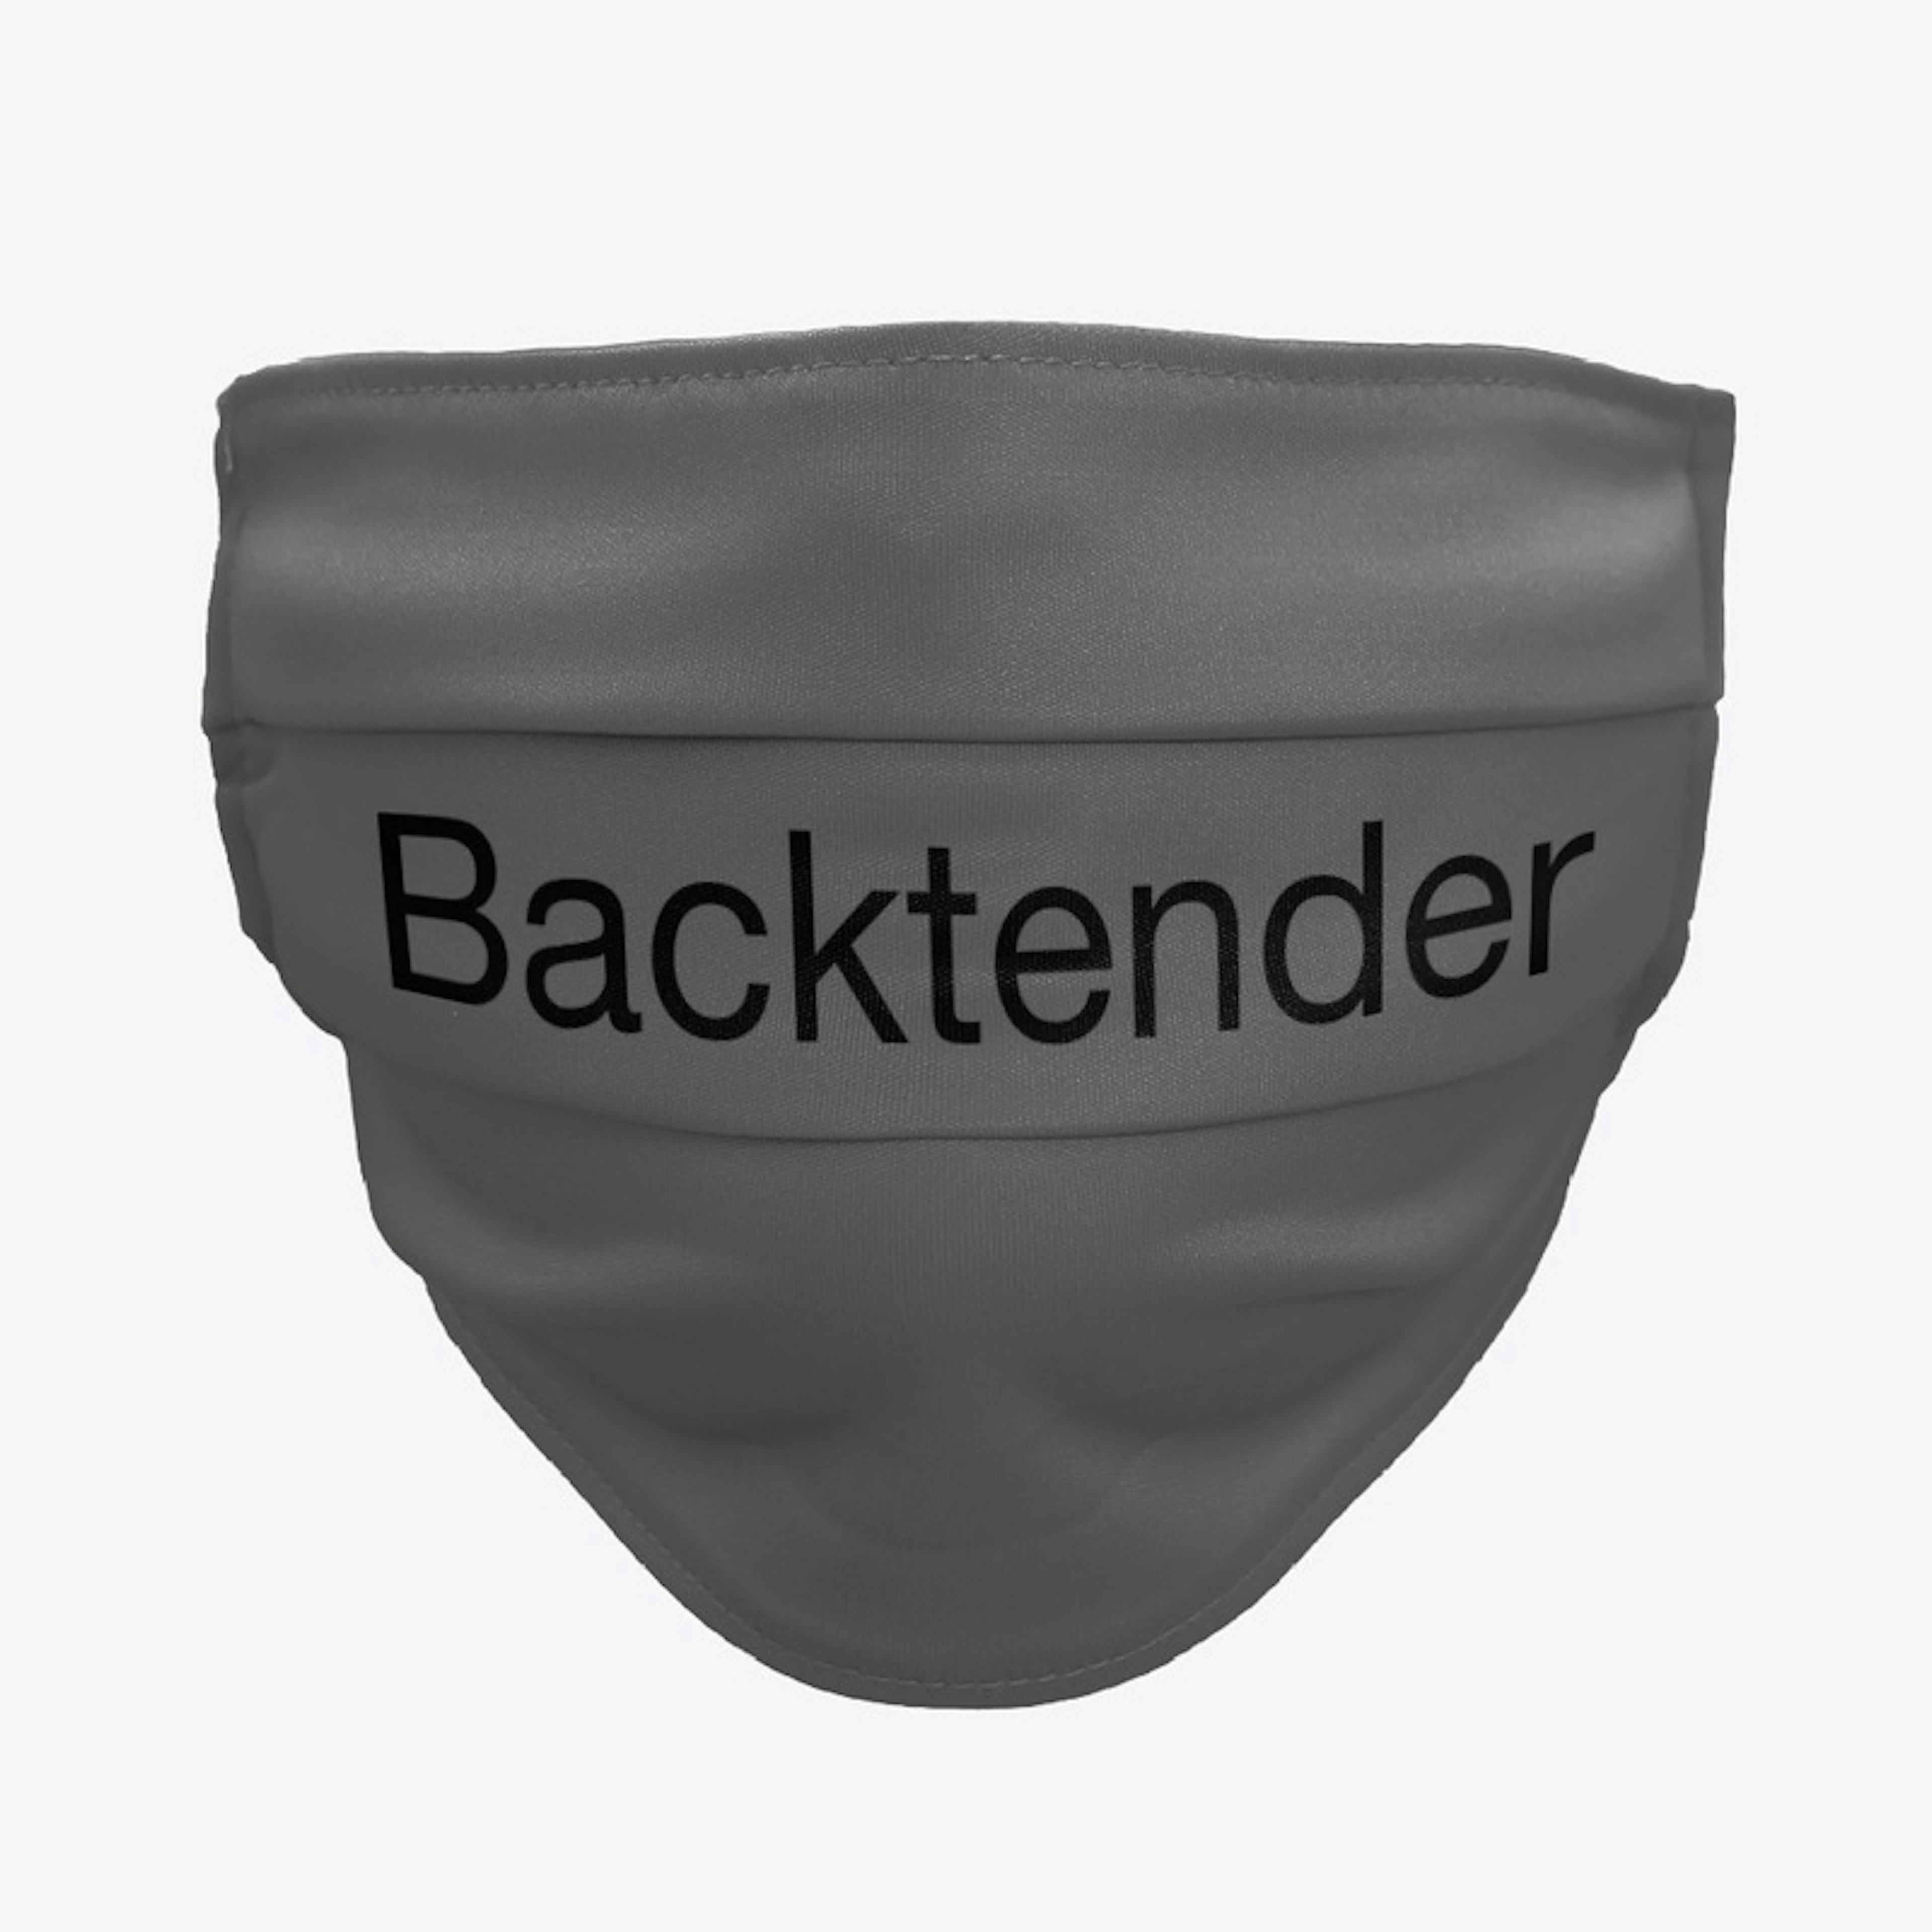 Backtender